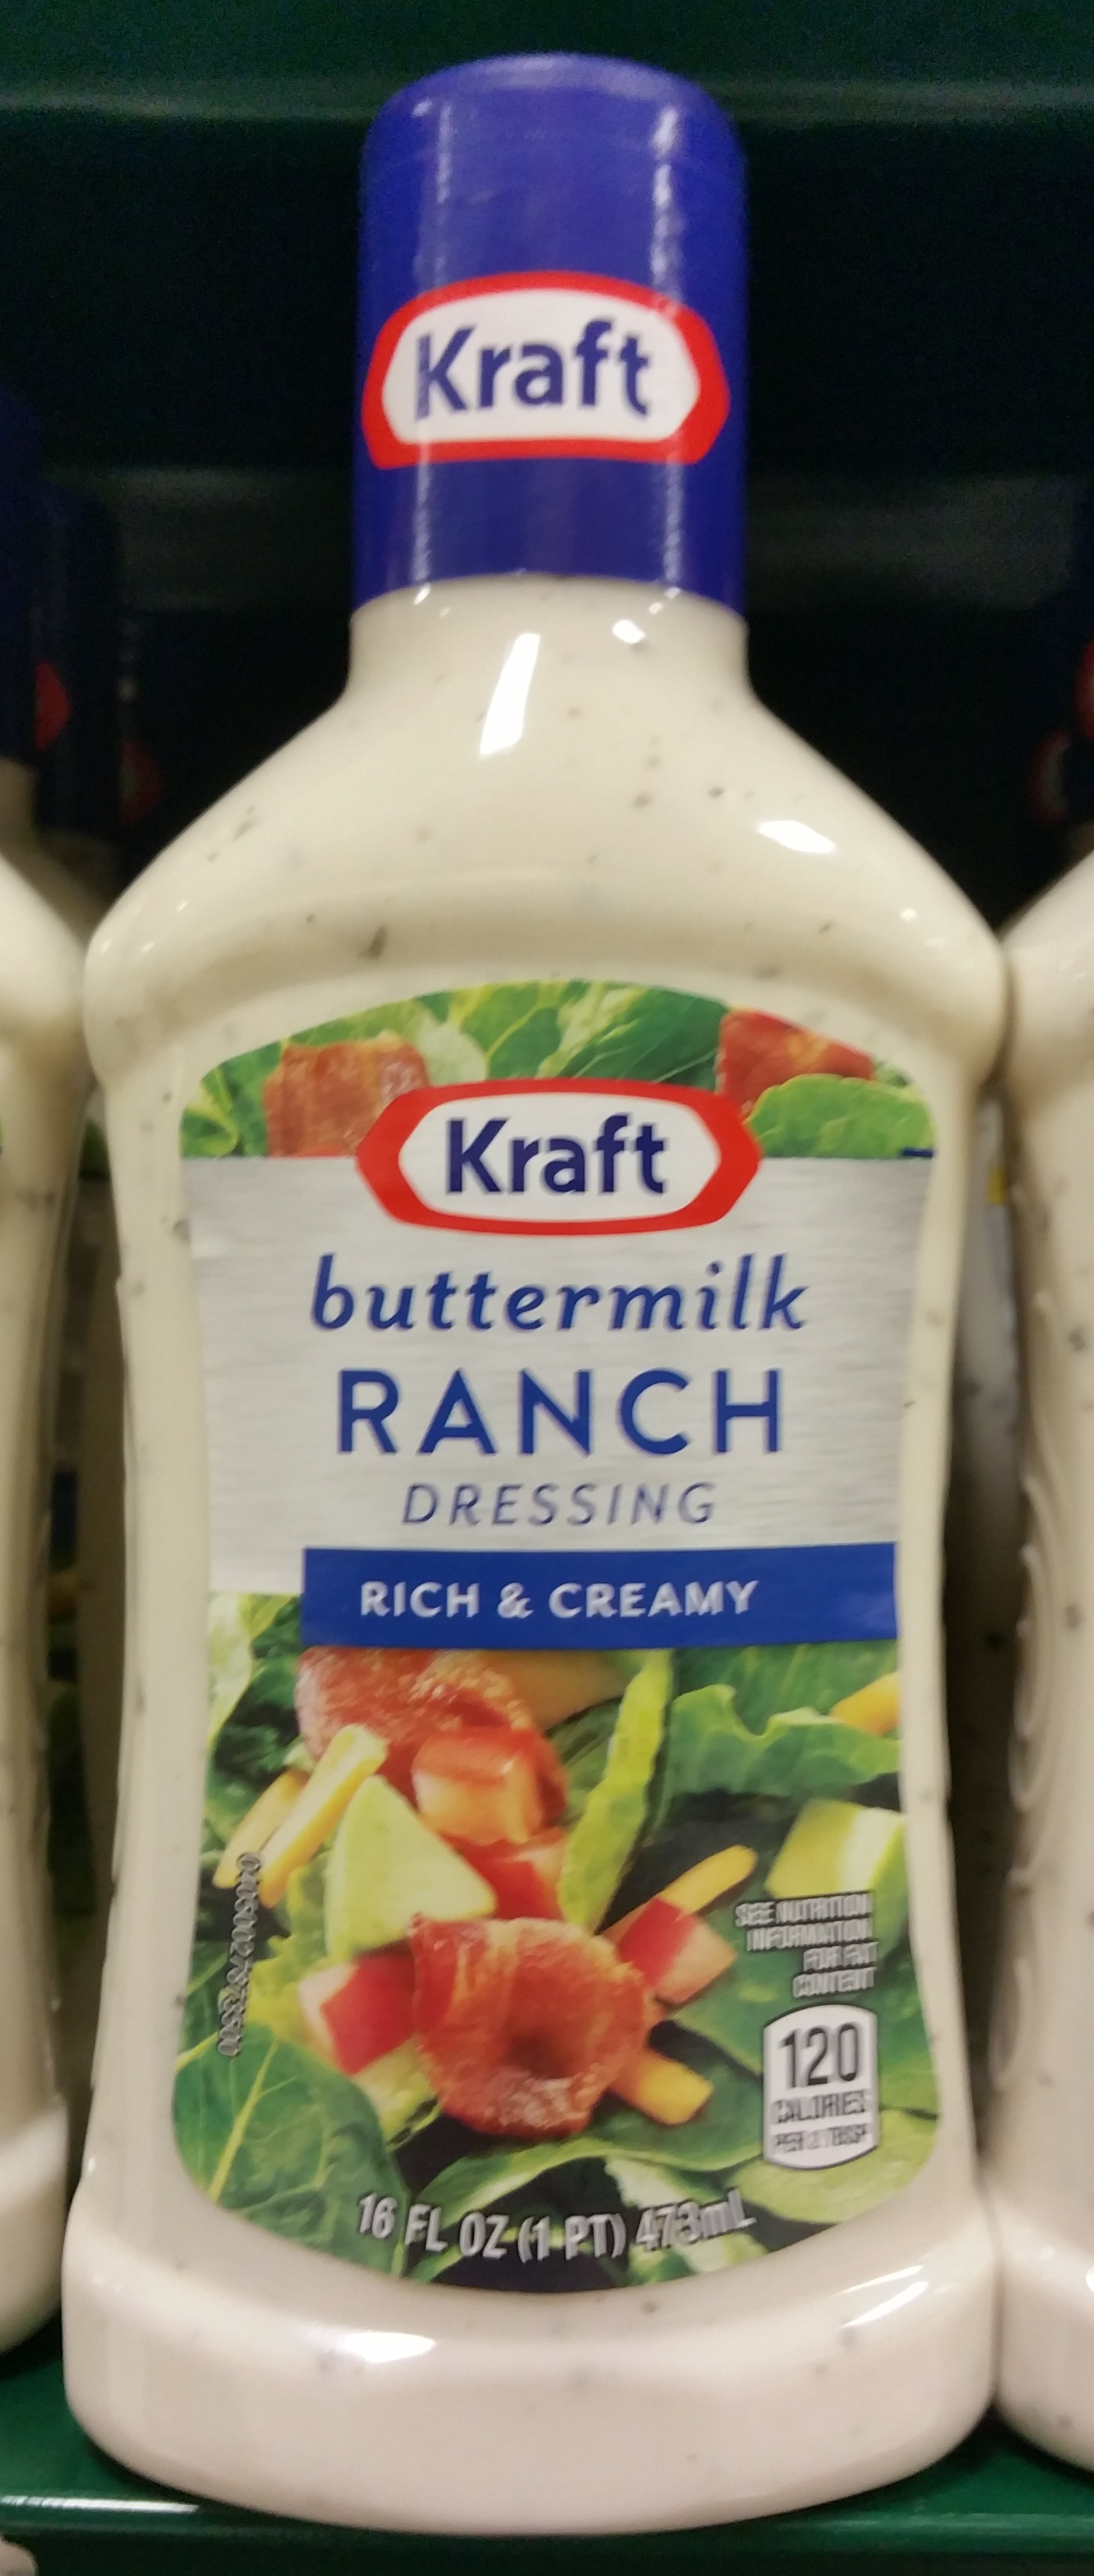 Buttermilk ranch dressing bottles - Produkt - en